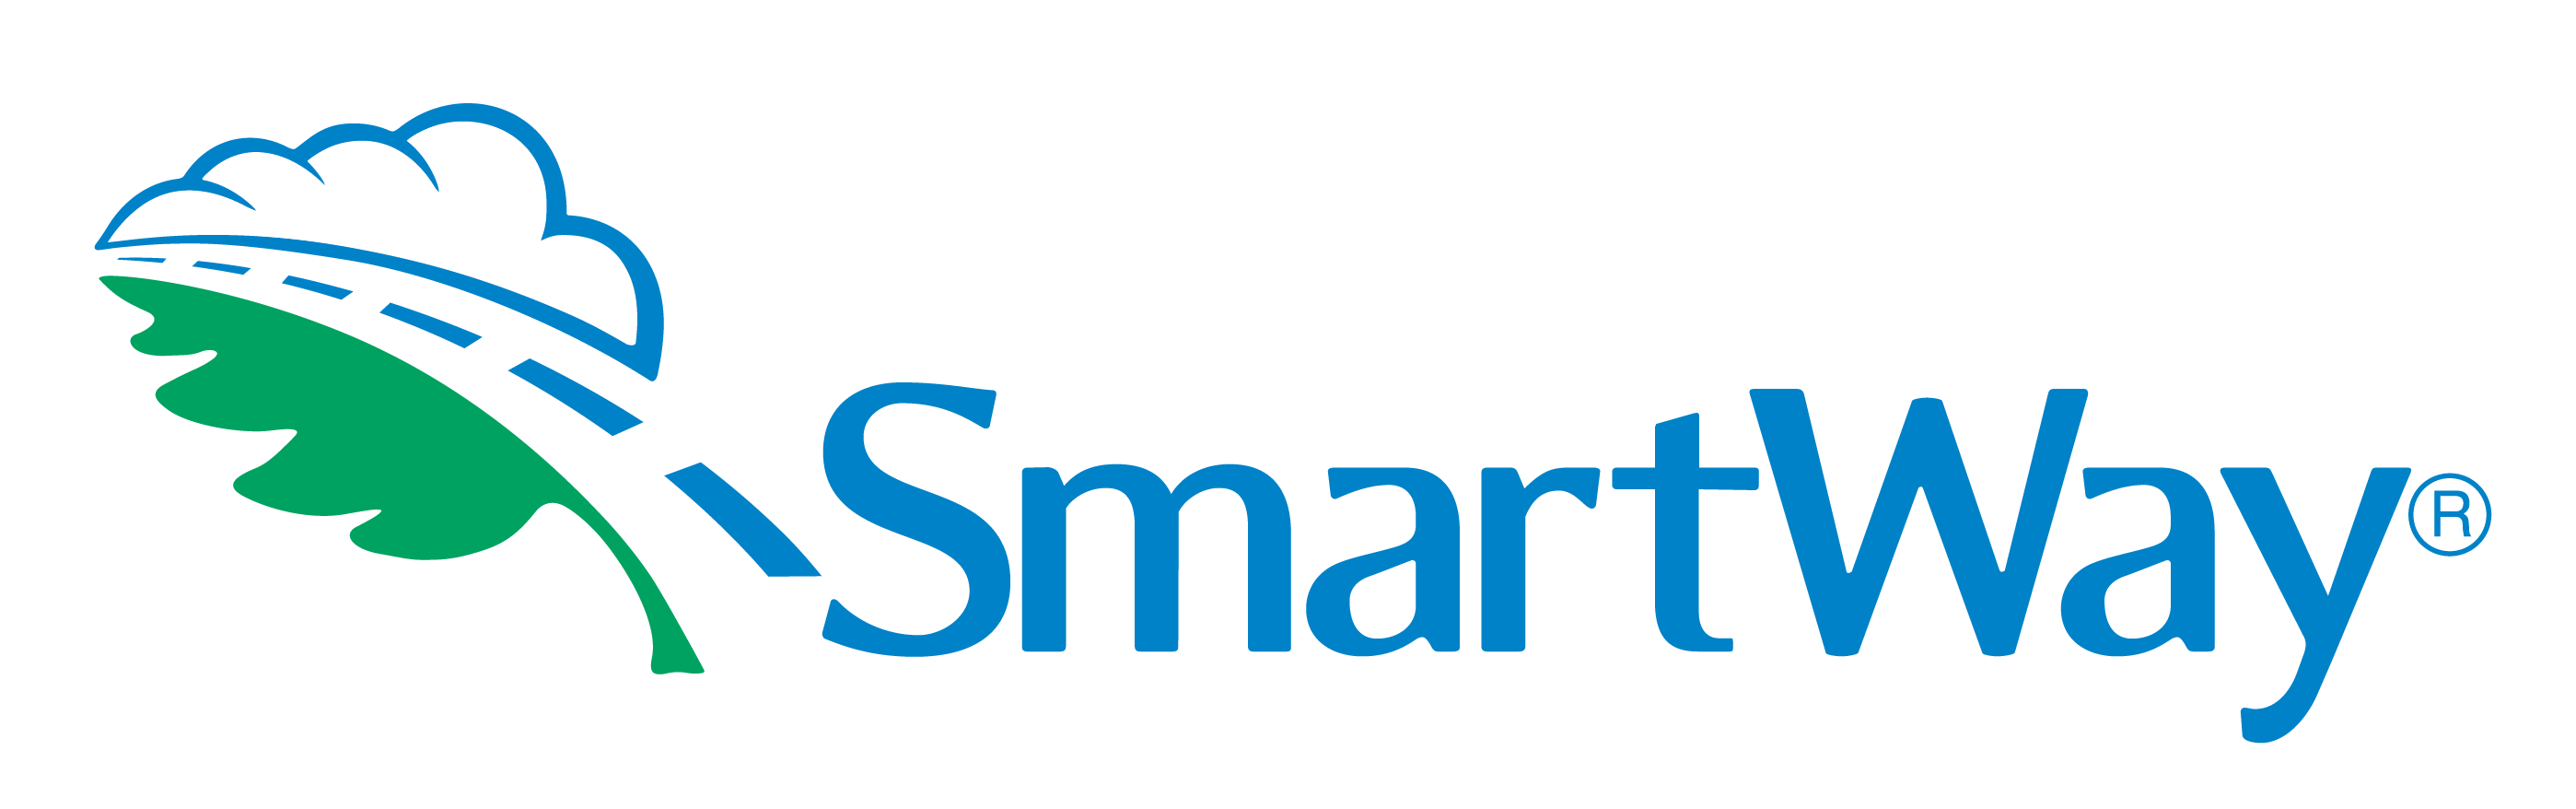 Smartway-Partner-Big-3-Freight